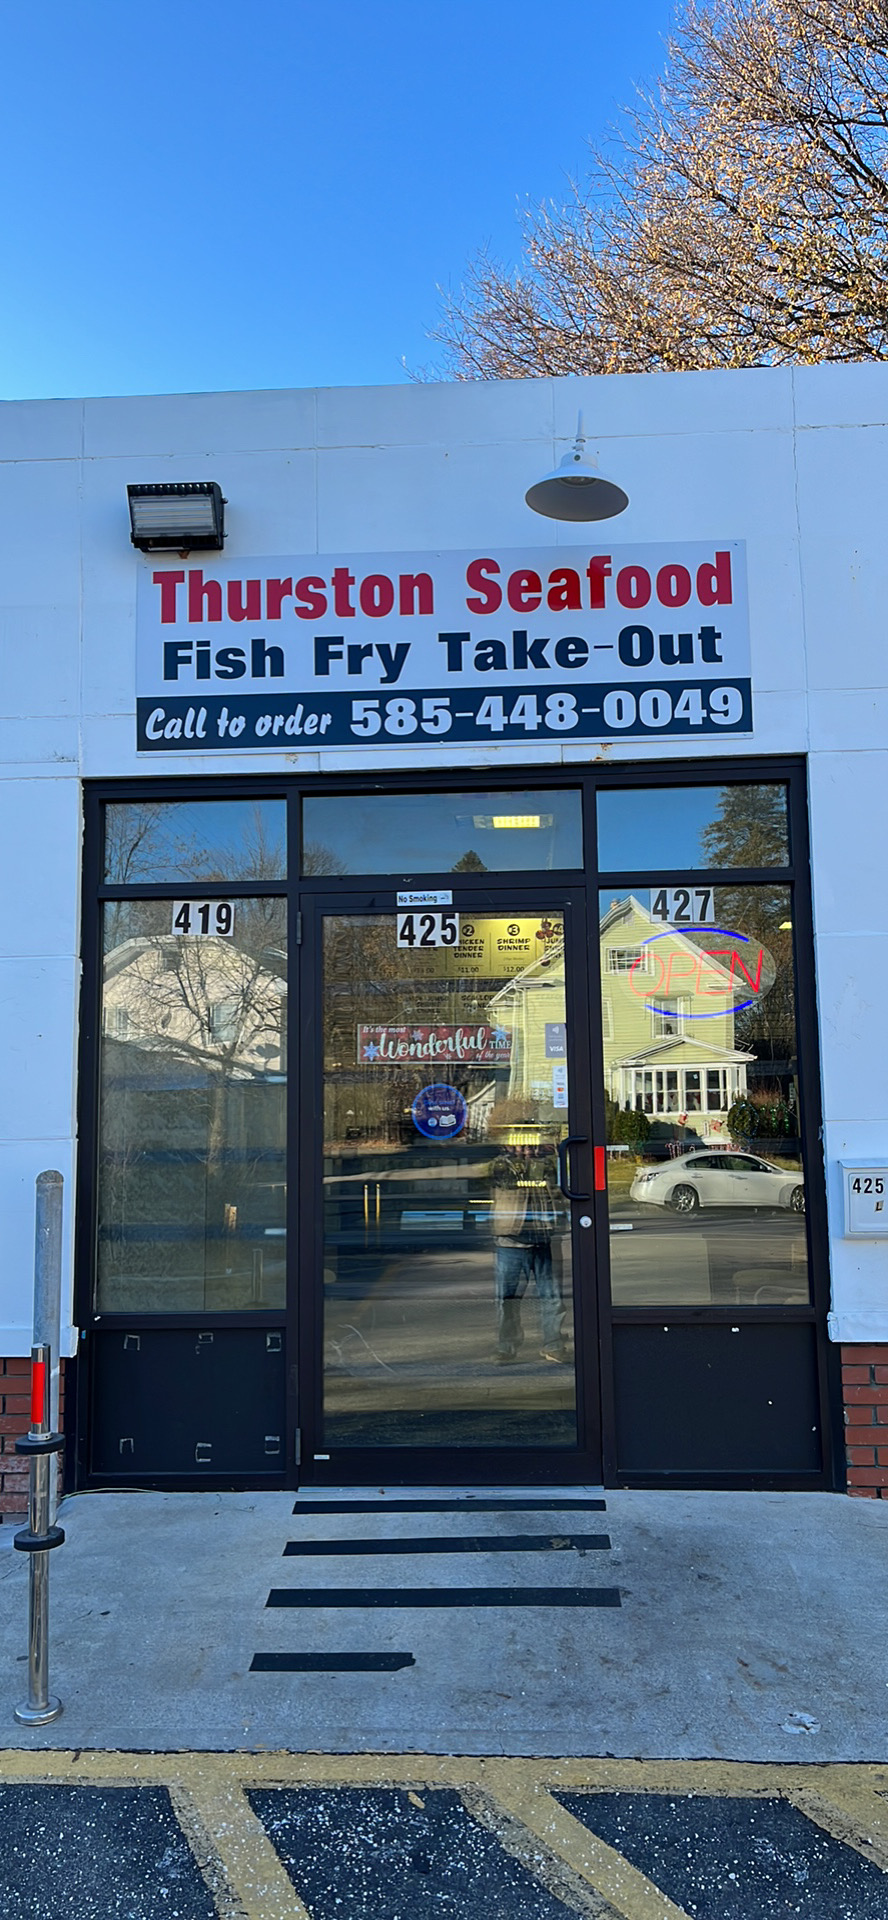 Thurston seafood (Not Fish Market)